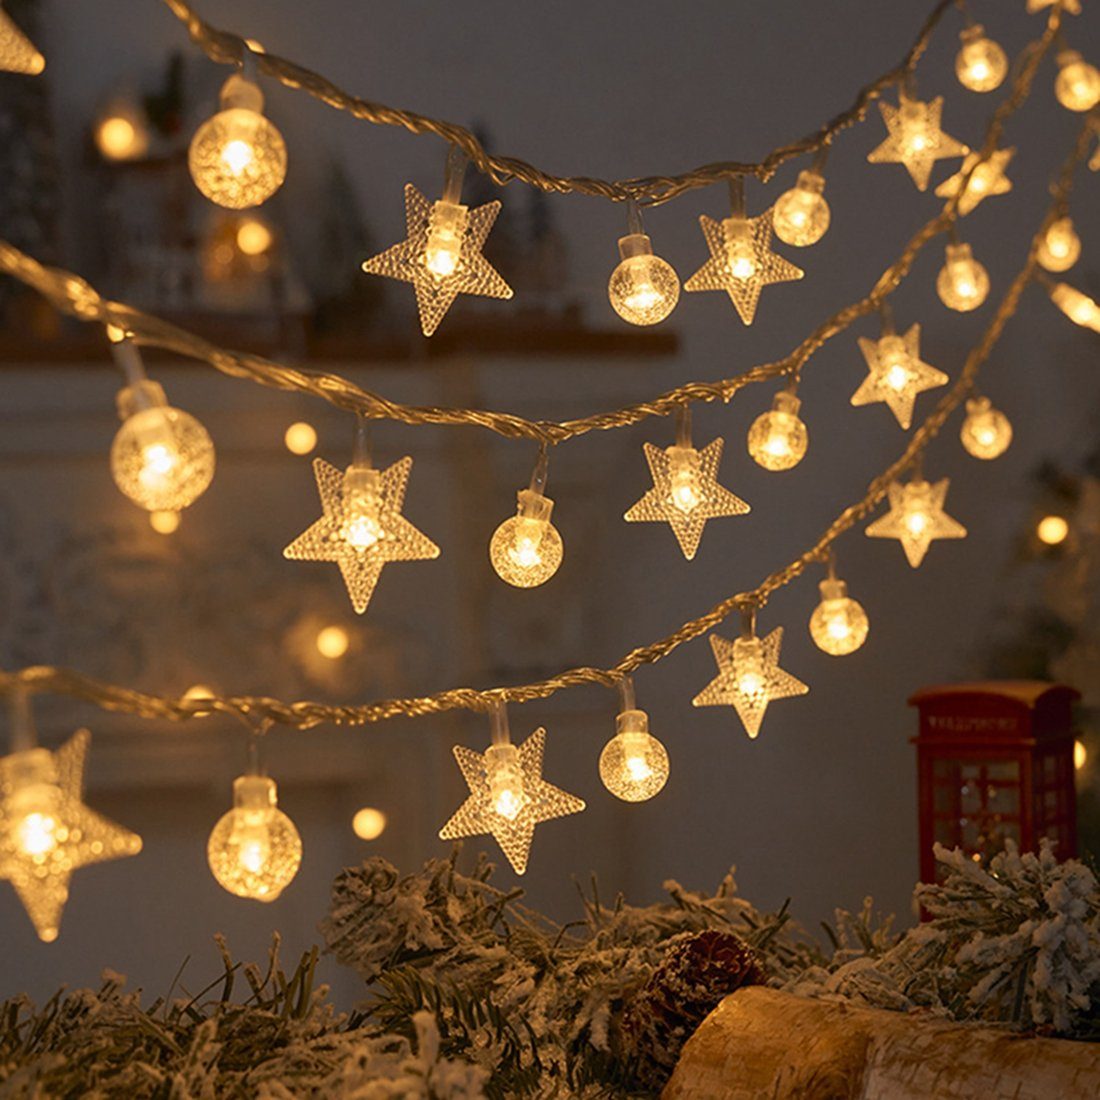 DAYUT LED-Lichterkette Weihnachtsbaumschmuck, 3m Star Warm Light String Lights